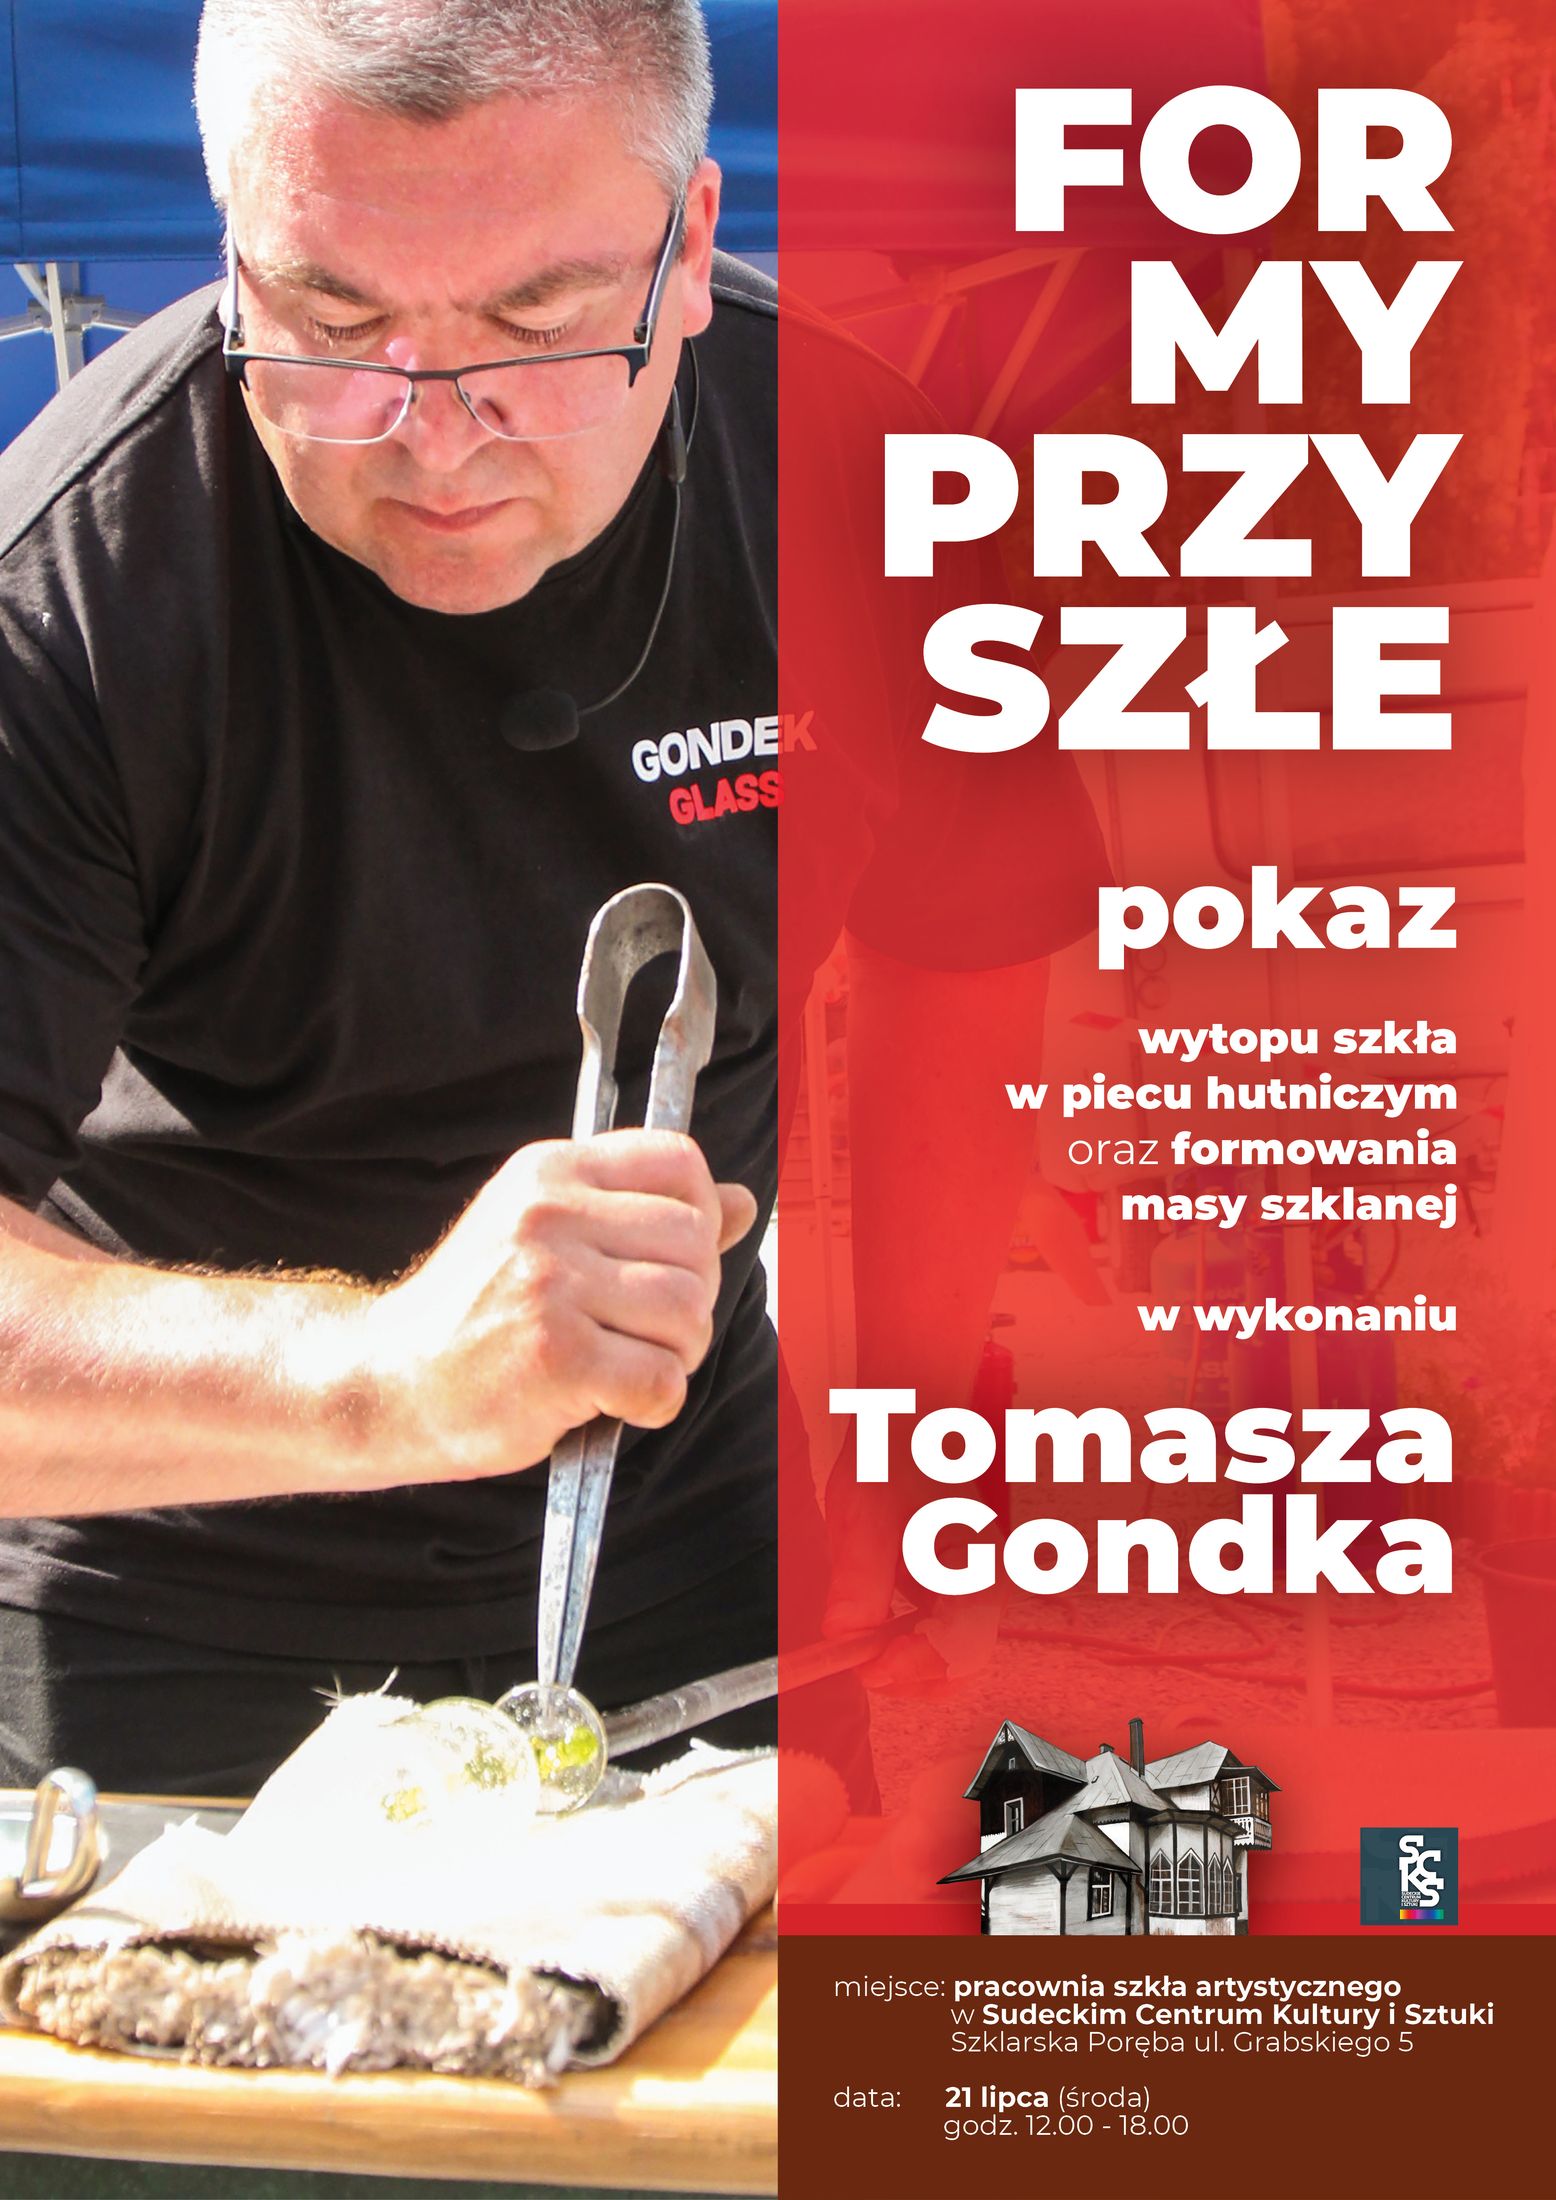 Formy przyszłe - pokaz szklarskiego mistrzostwa Tomasza Gondka